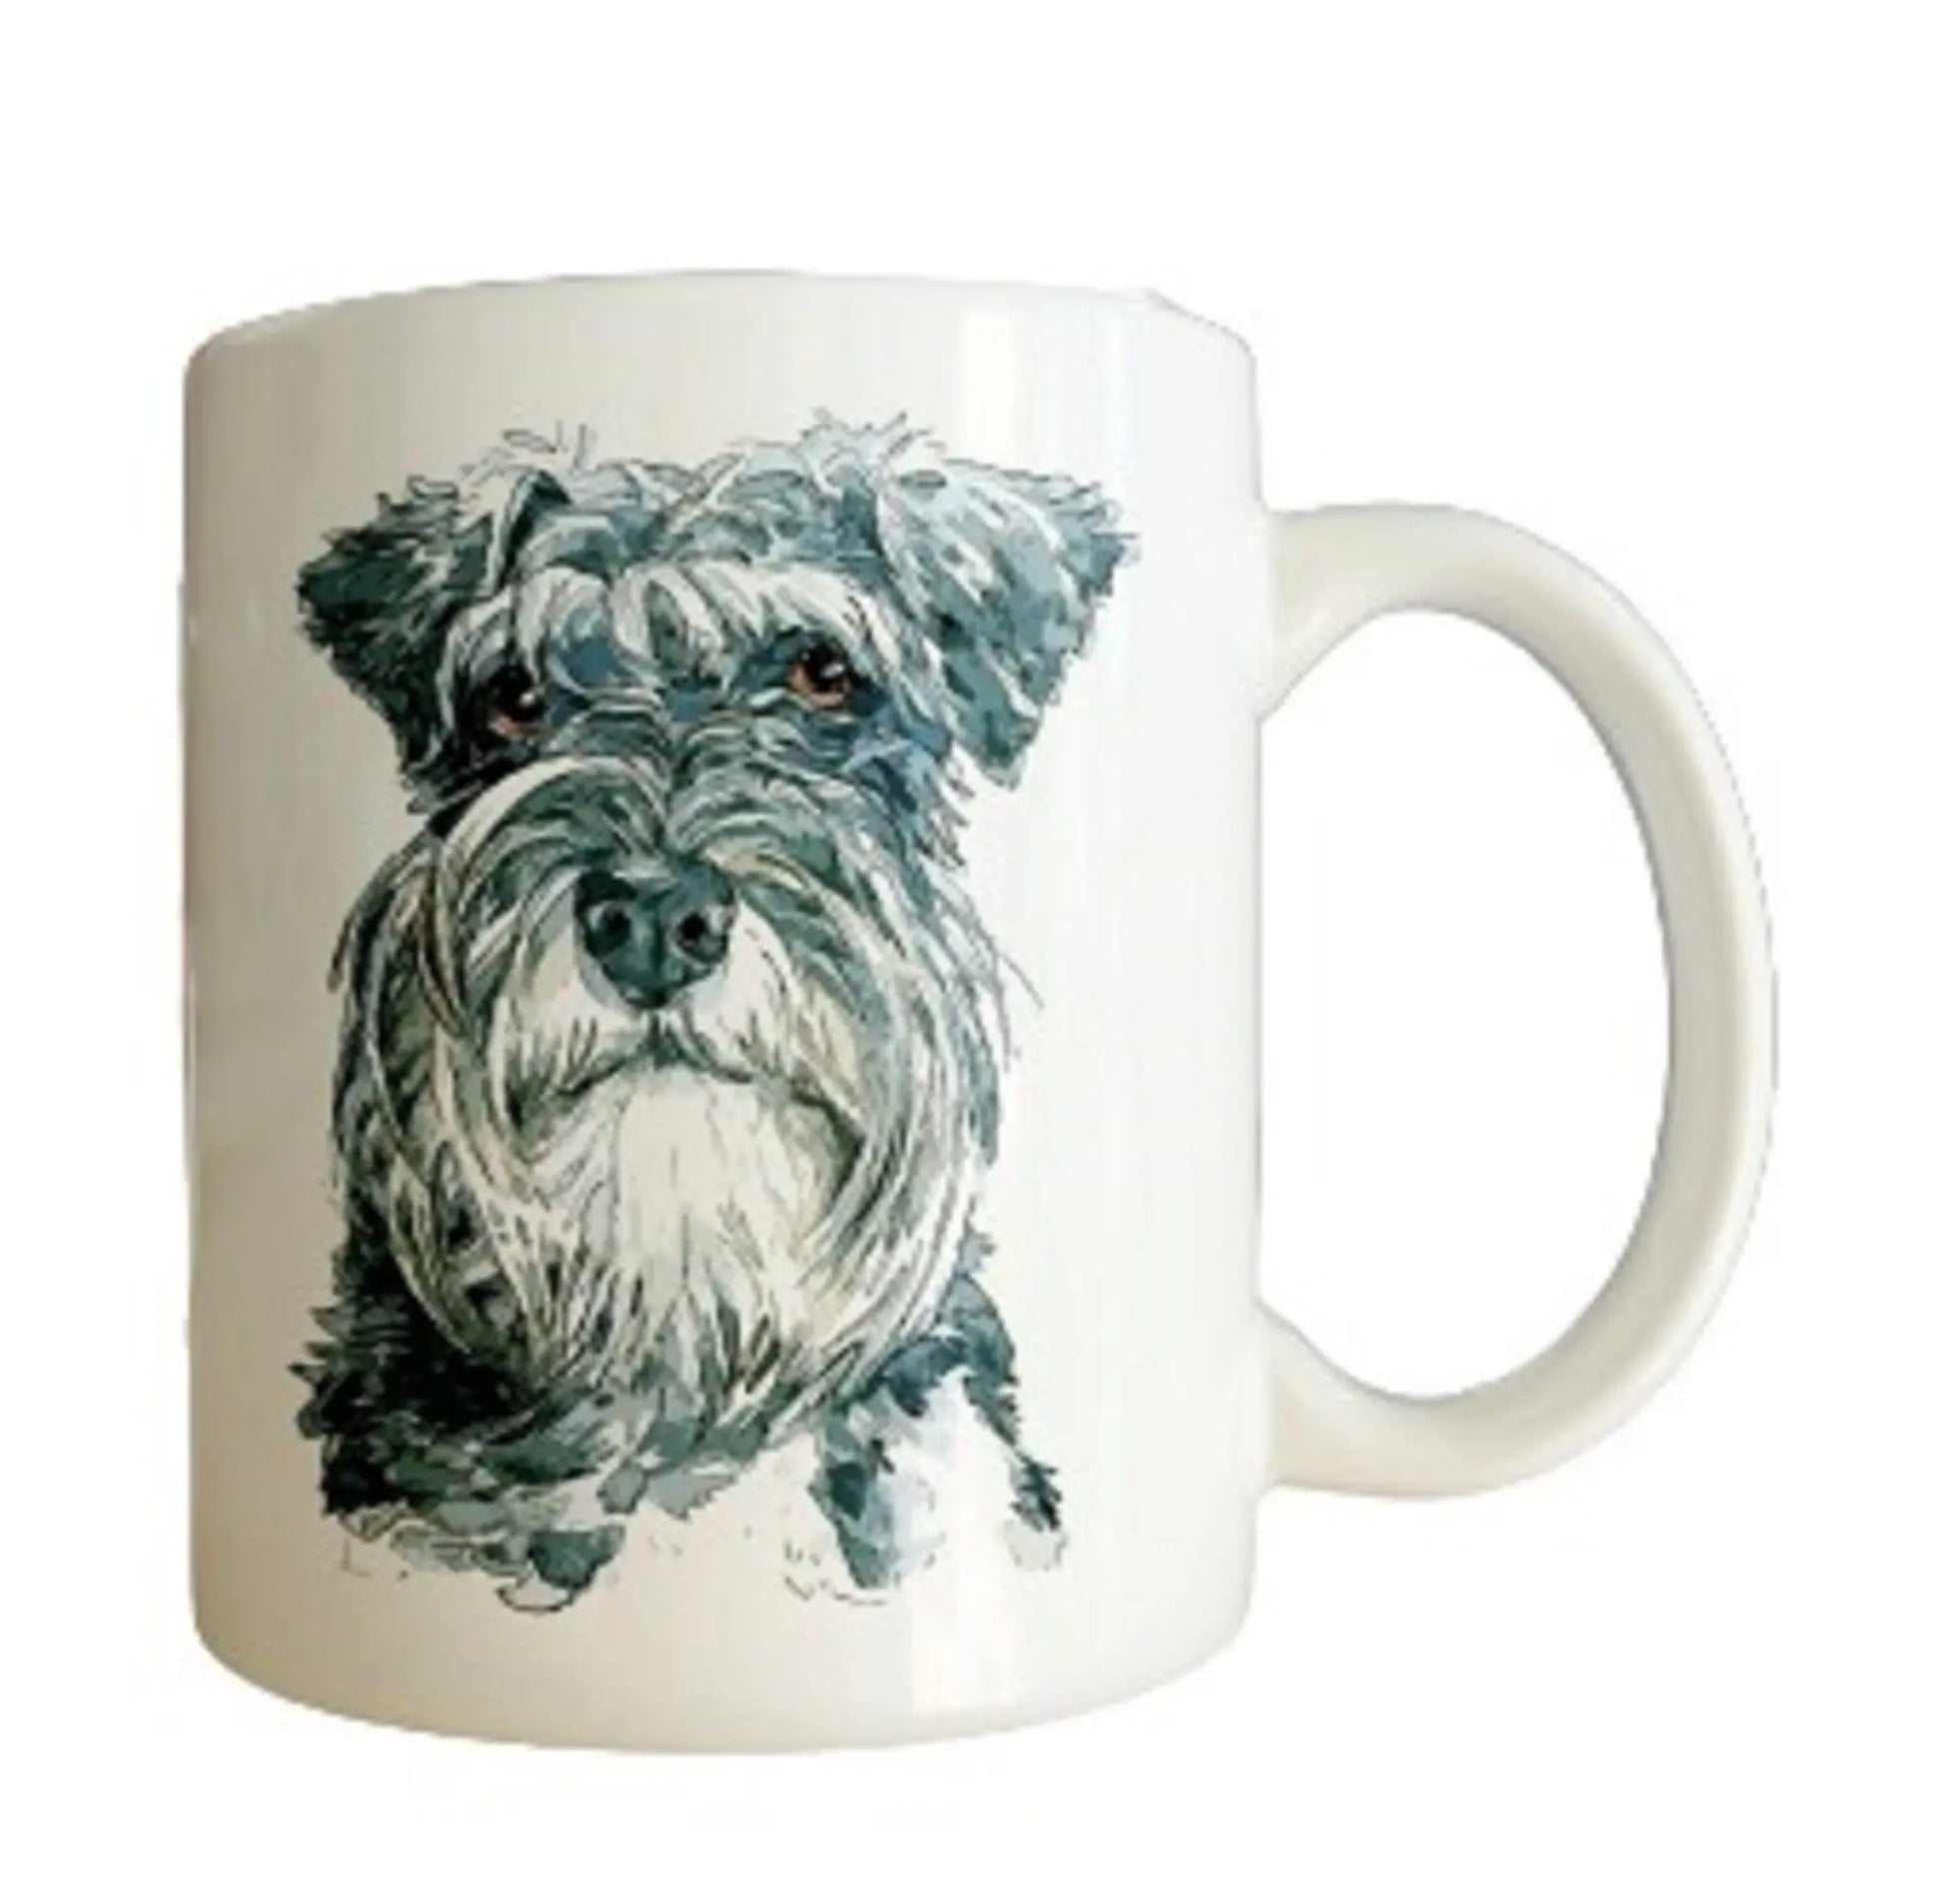  Beautiful Schnauzer Dog Mug by Free Spirit Accessories sold by Free Spirit Accessories